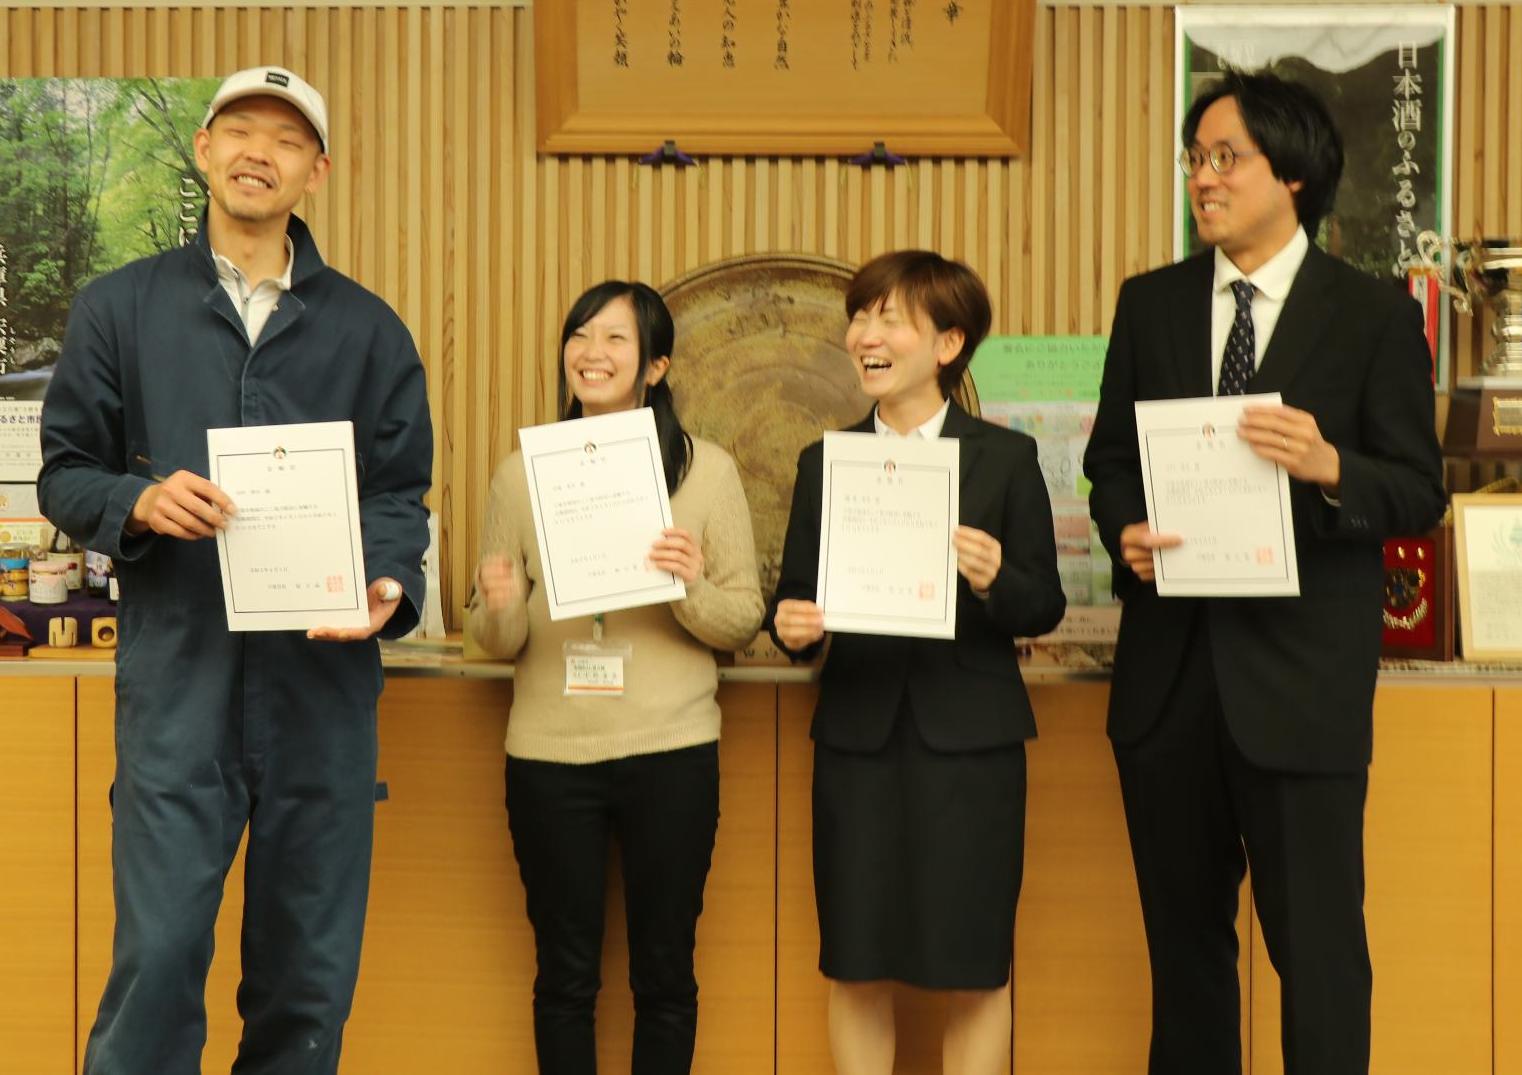 宍粟市地域おこし協力隊員4名が委嘱状をそれぞれの手に持ち笑顔を見せている写真